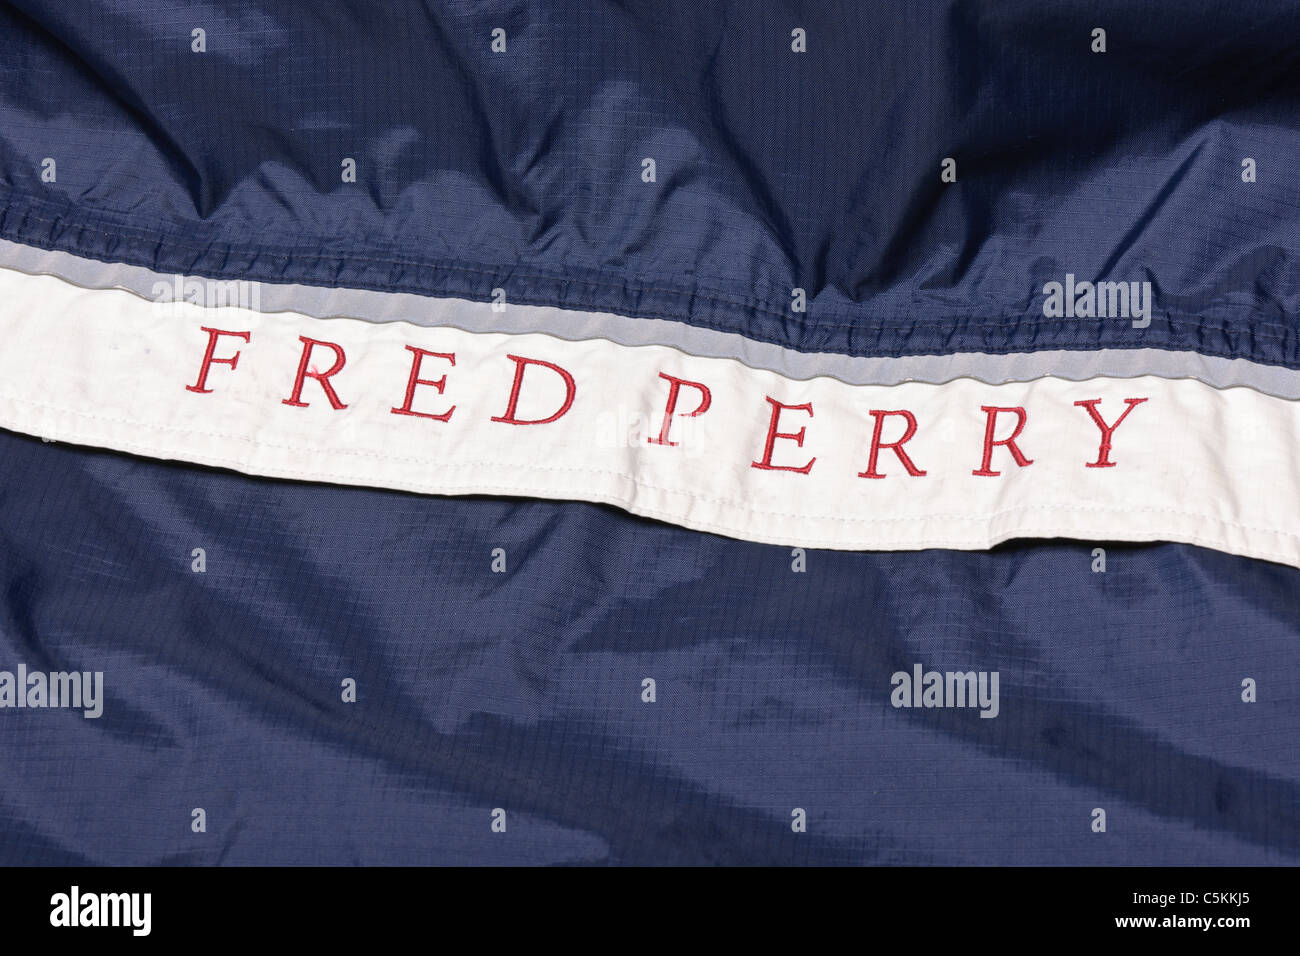 Fred perry sportbekleidung -Fotos und -Bildmaterial in hoher Auflösung –  Alamy